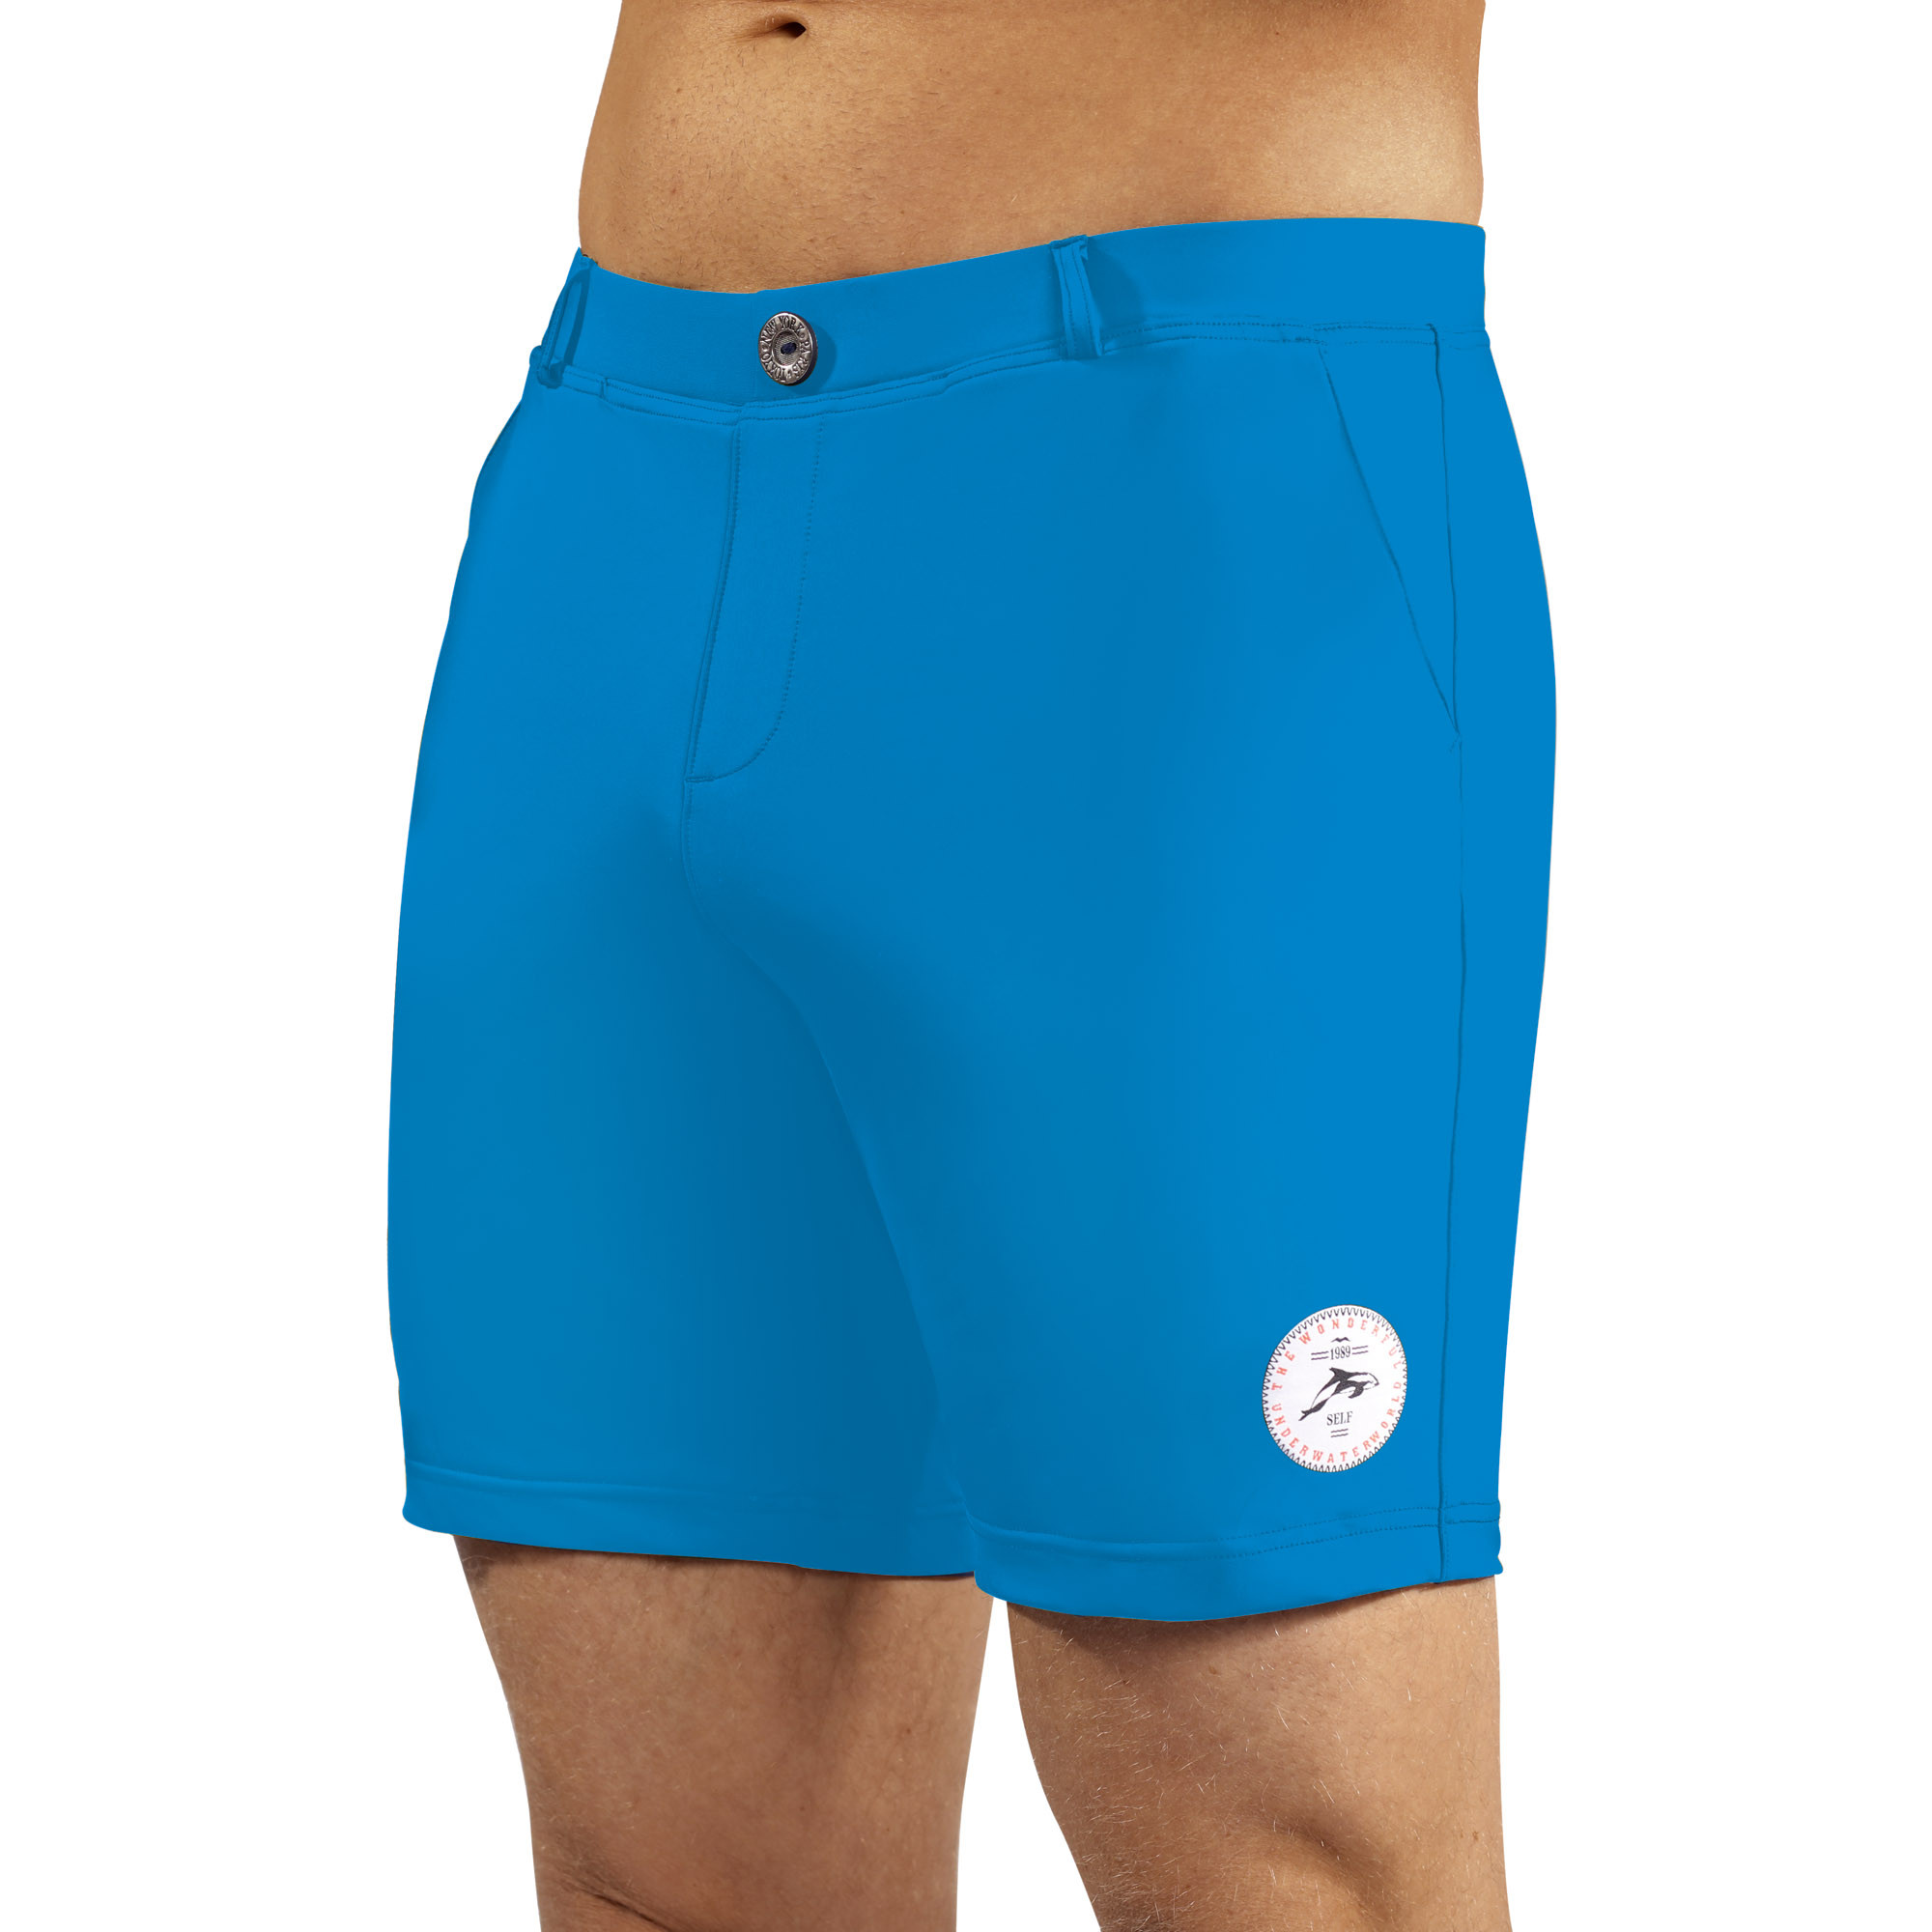 Pánské plavky Swimming shorts comfort12 - sv. modrá - Self 2XL